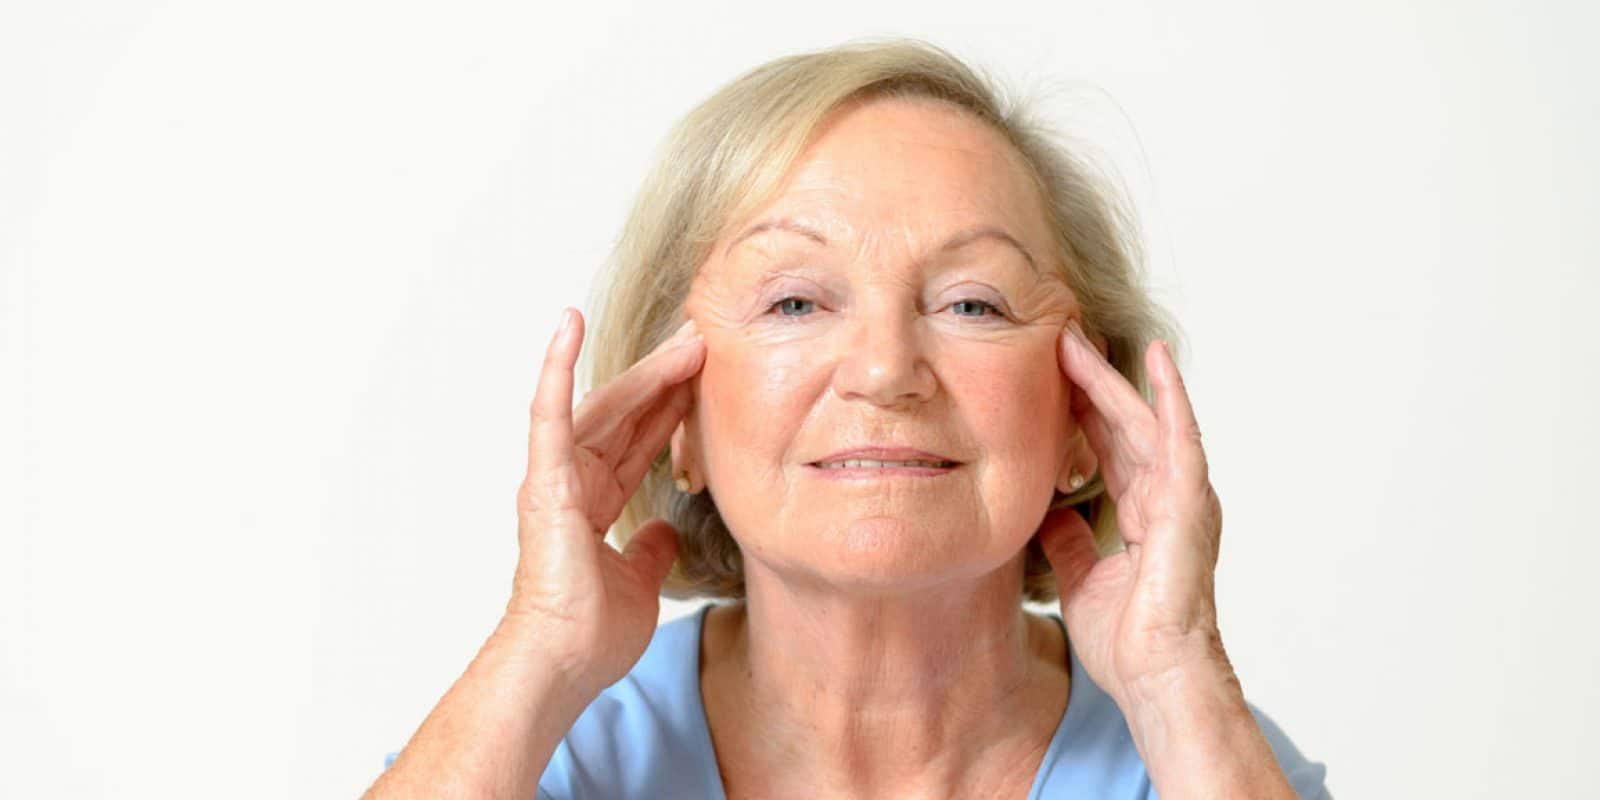 Le lifting visage après 60 ans : que faut-il savoir ?